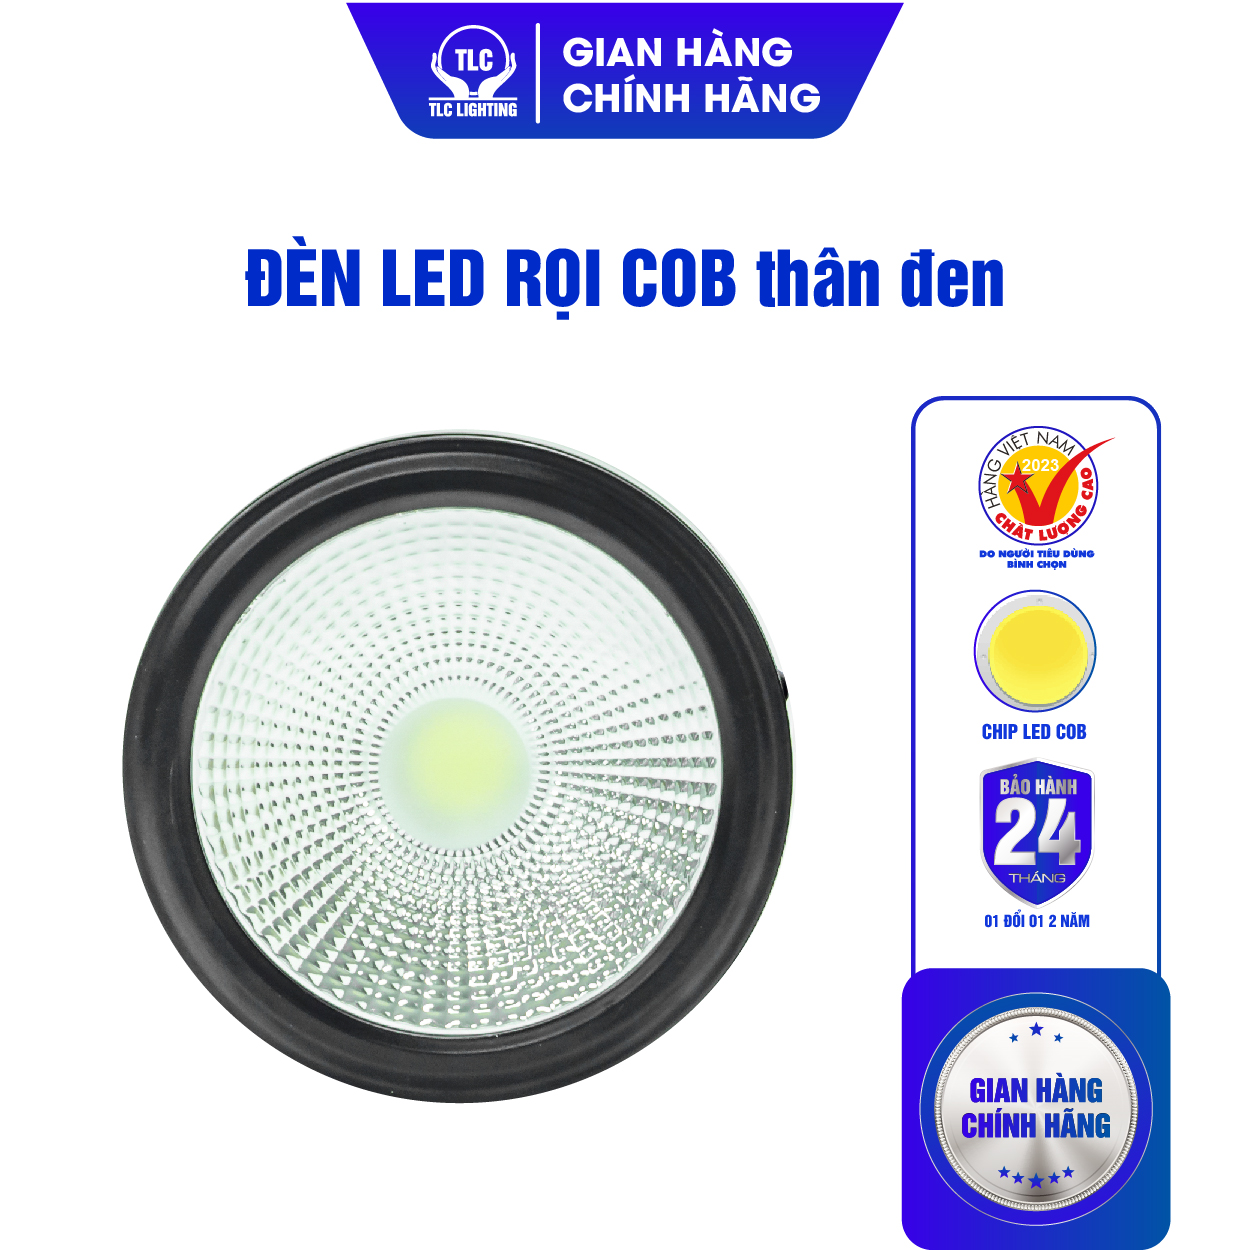 Đèn LED Rọi Ống Bơ Thân Đen TLC LIGHTING - COD 115, 12W